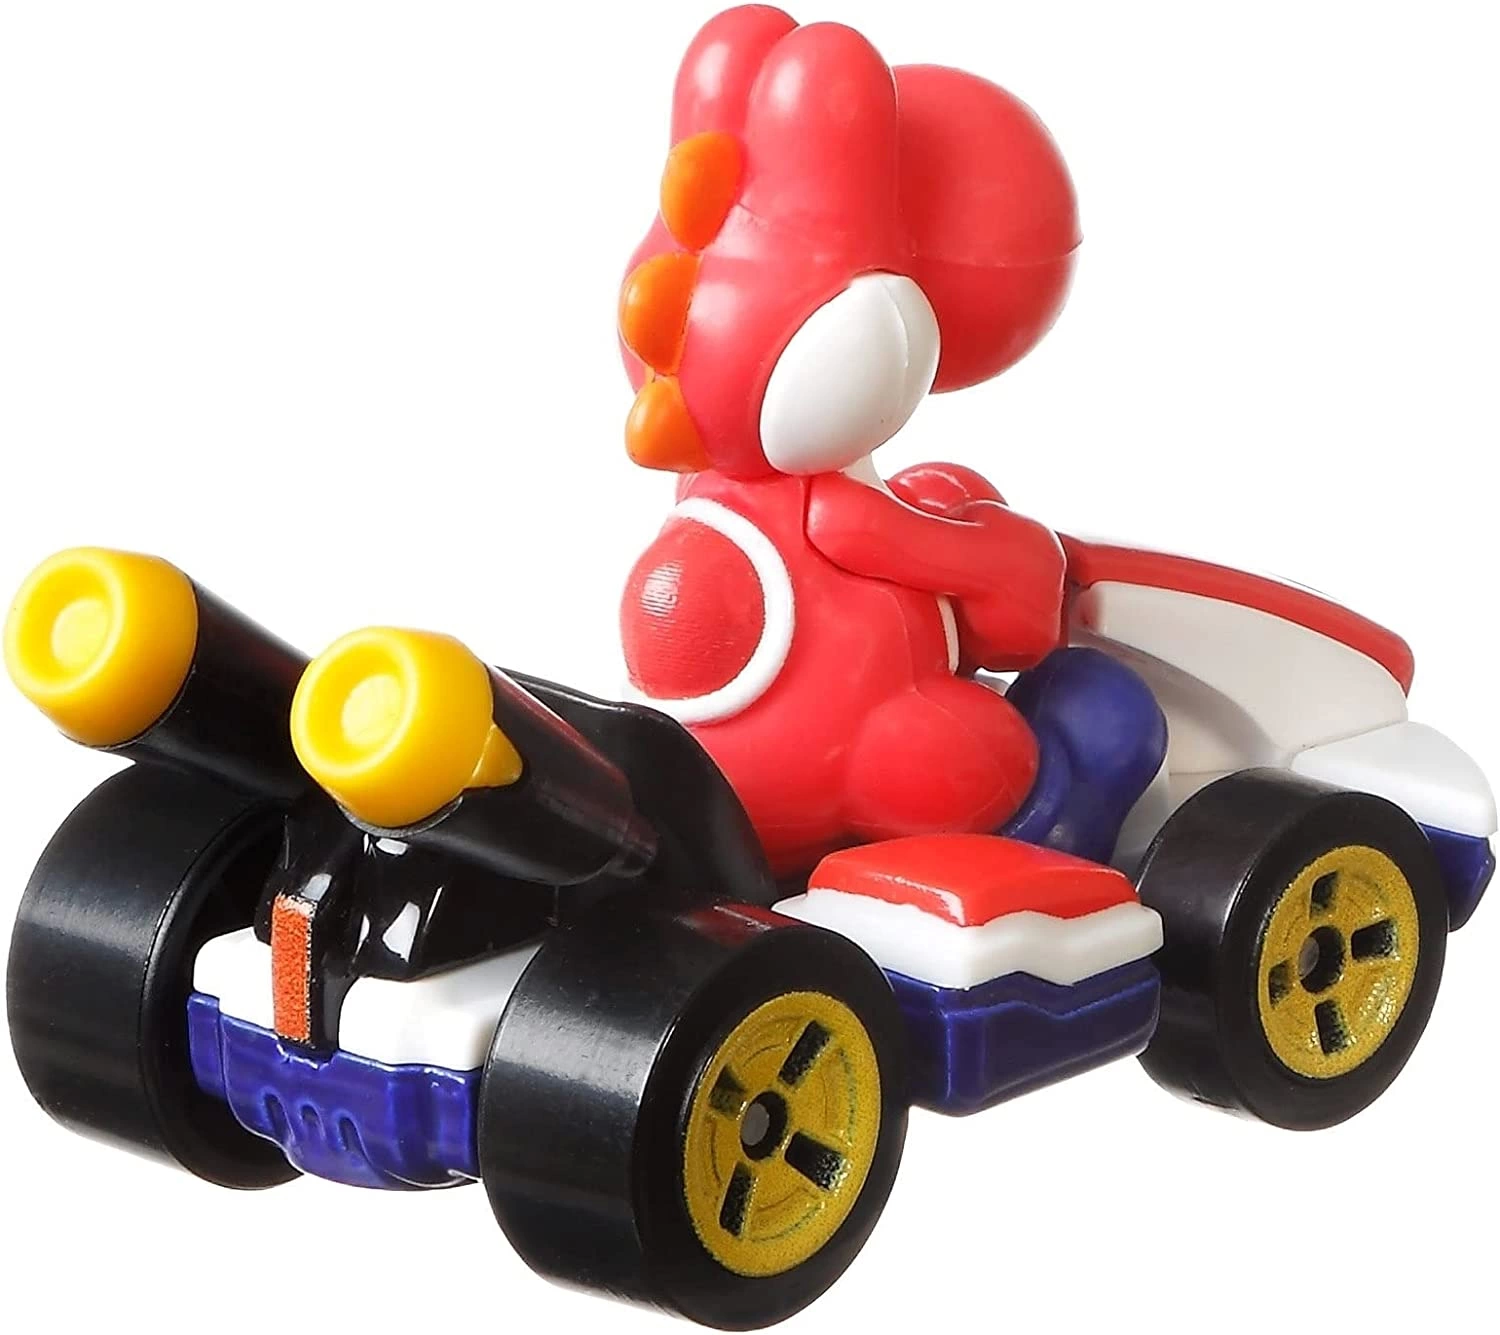 Hot Wheels Mario Kart Red Yoshi Standart Kart 2265